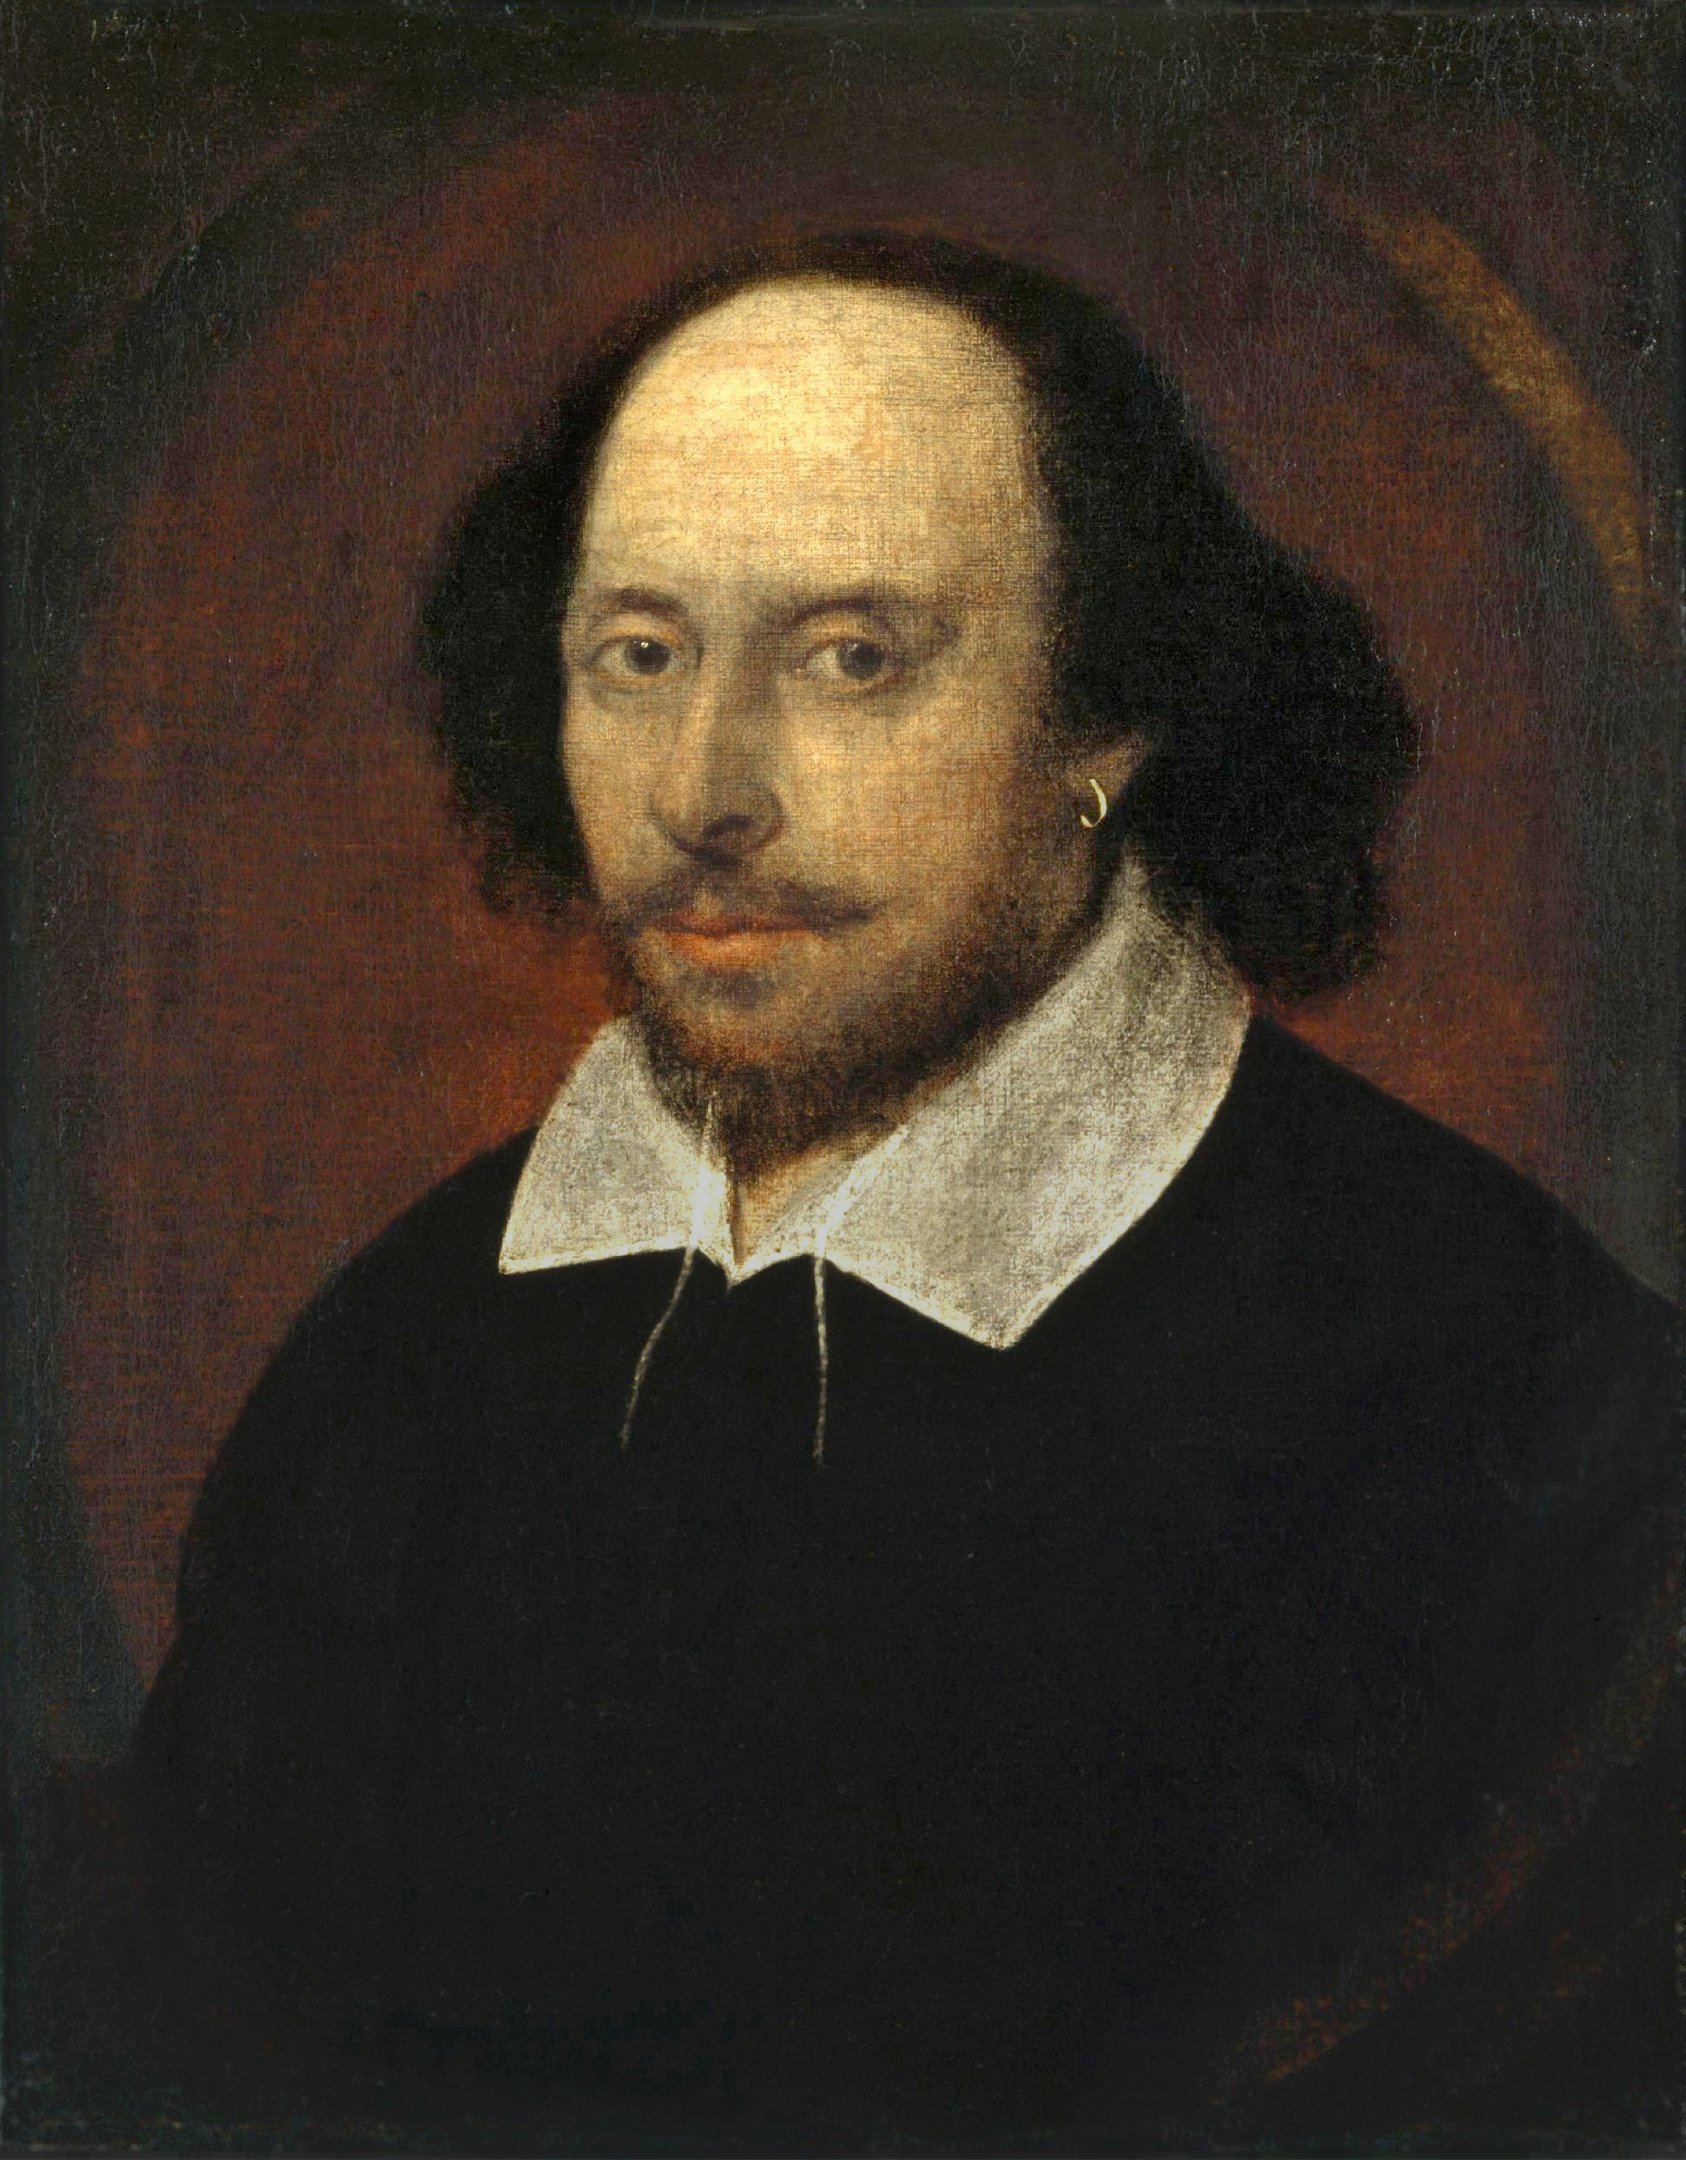 William Shakespeare escreveu algumas de suas principais obras durante um surto de peste bubônica